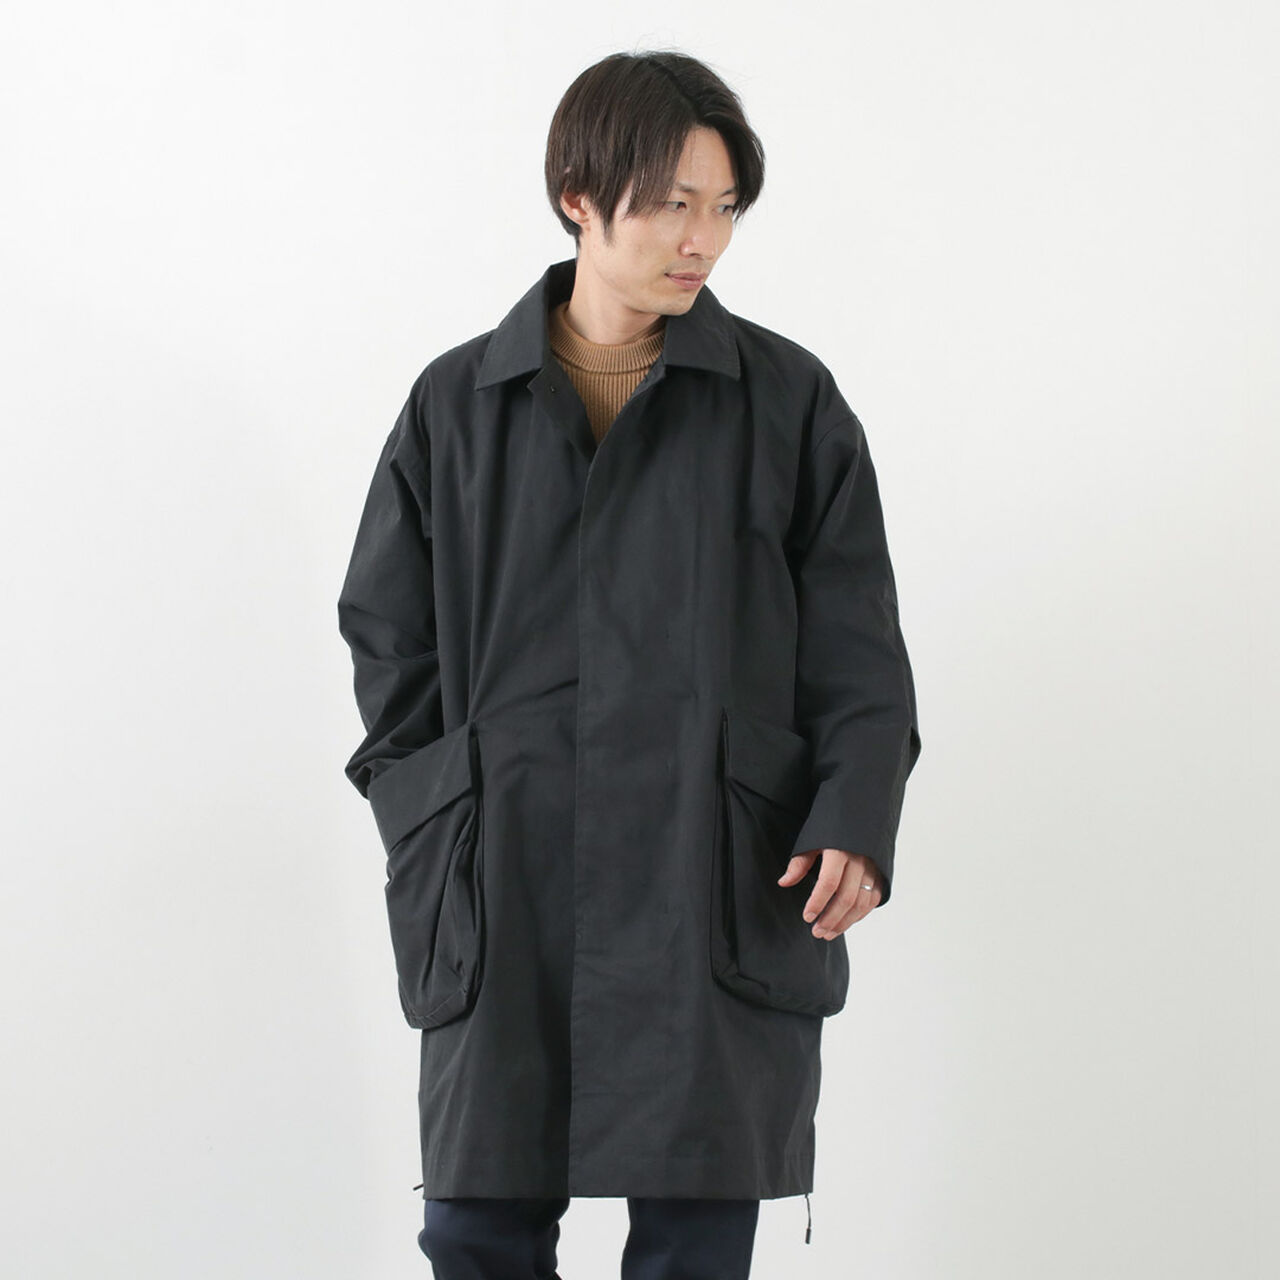 Expansion coat,Black, large image number 0